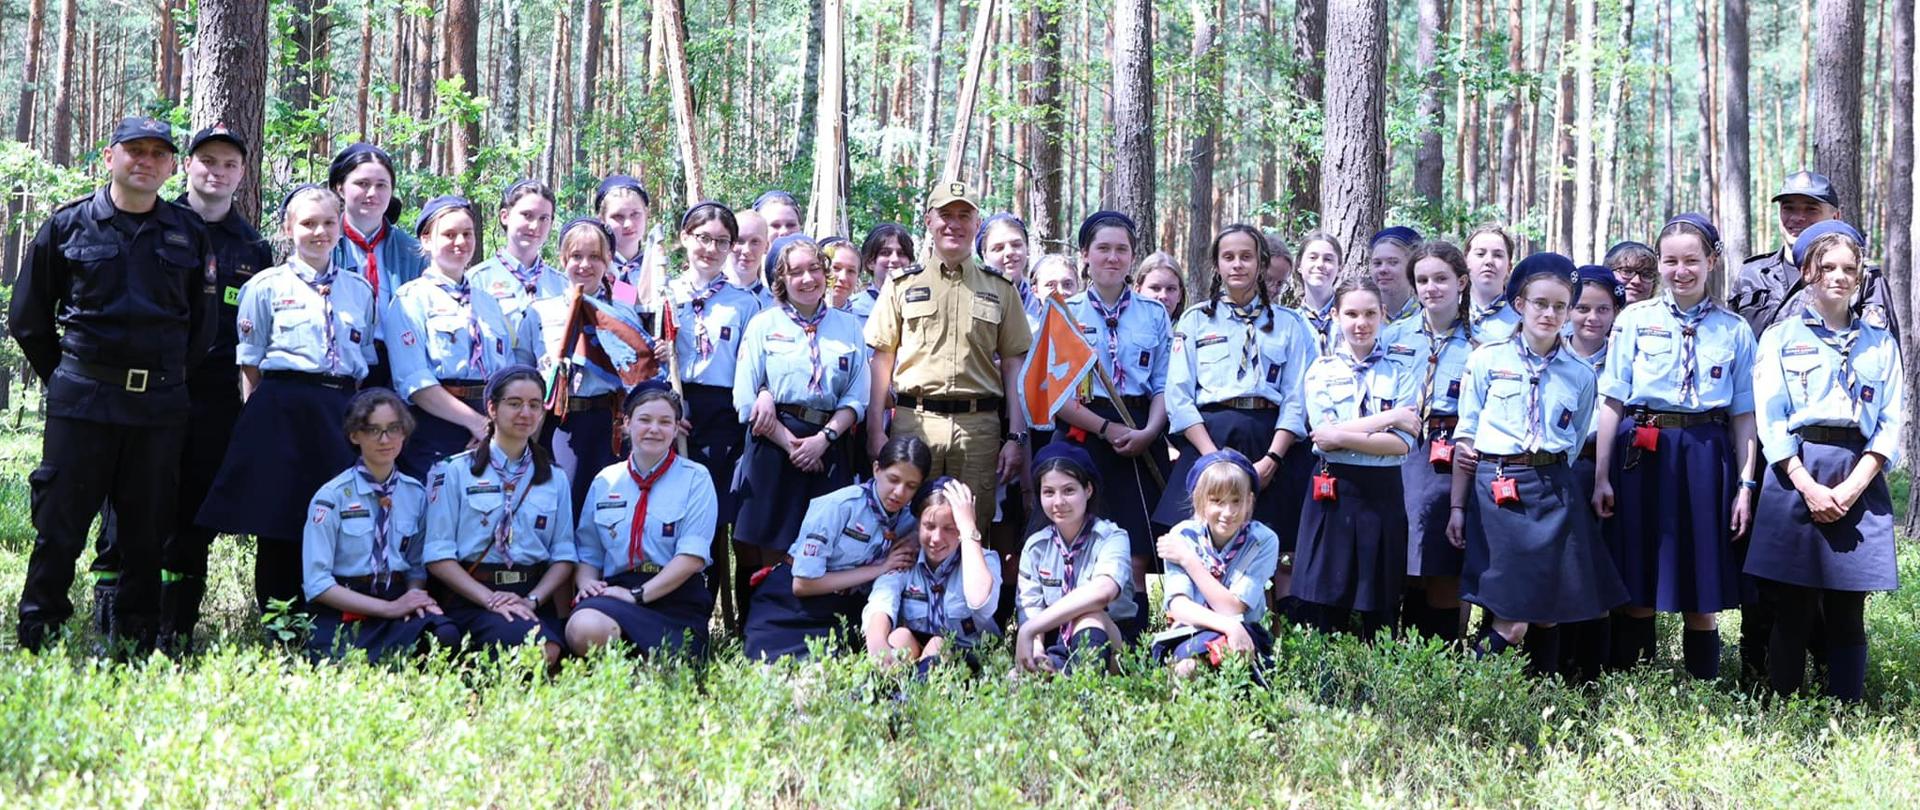 Na zdjęciu widać komendanta głównego PSP, strażaków z KP PSP Ostrów Mazowiecka oraz 14 Warszawski Szczep Skautów Europy. W tle las.